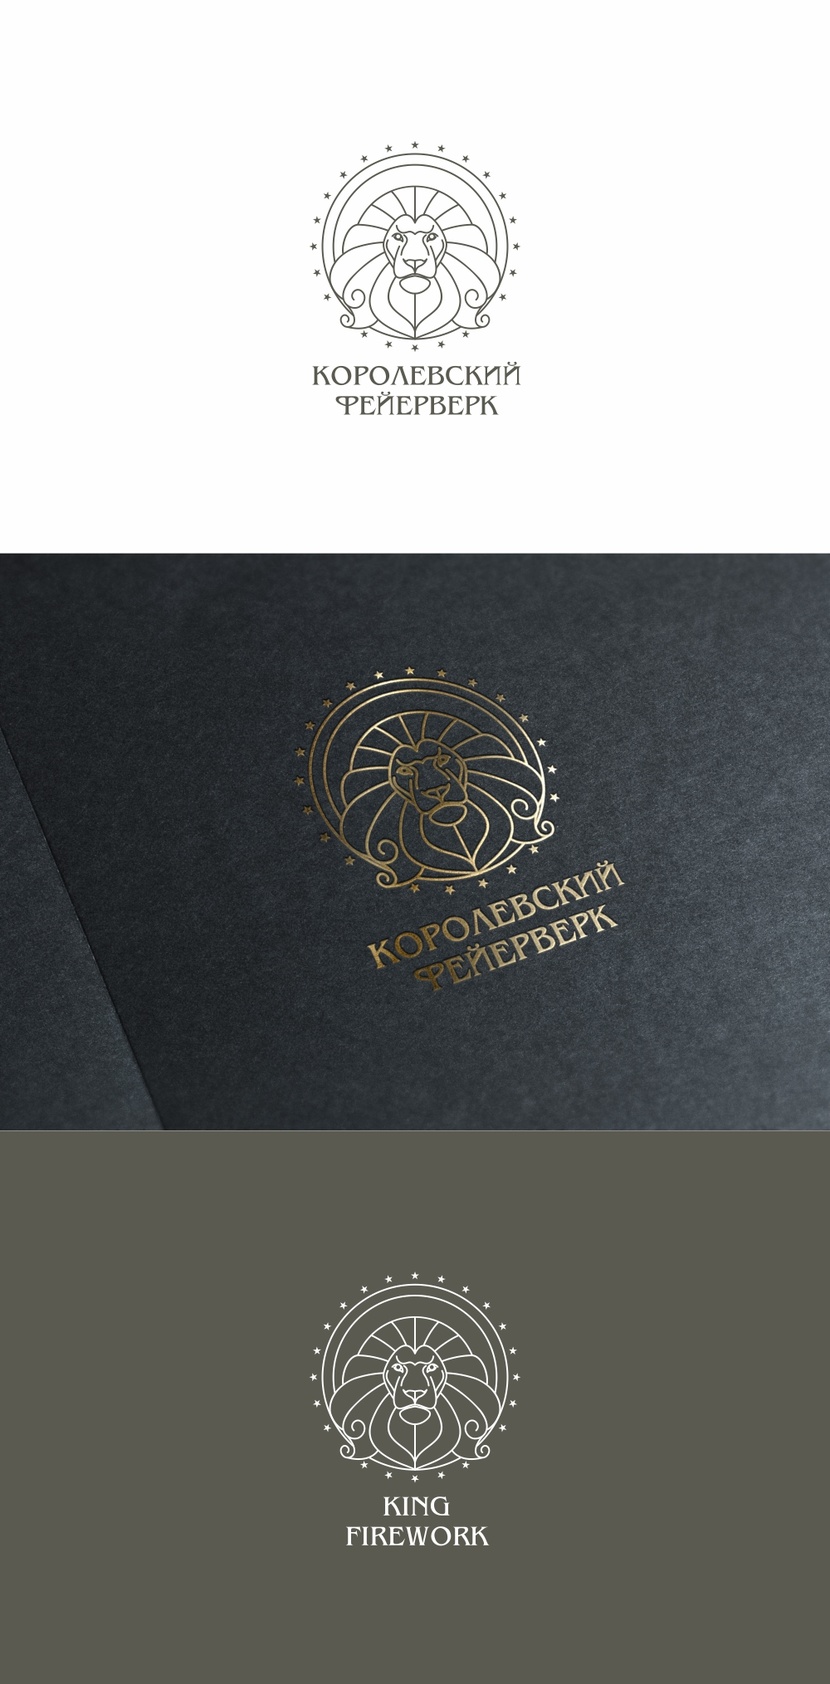 Разработка логотипа компании "Королевский фейерверк"  -  автор Андрей Мартынович